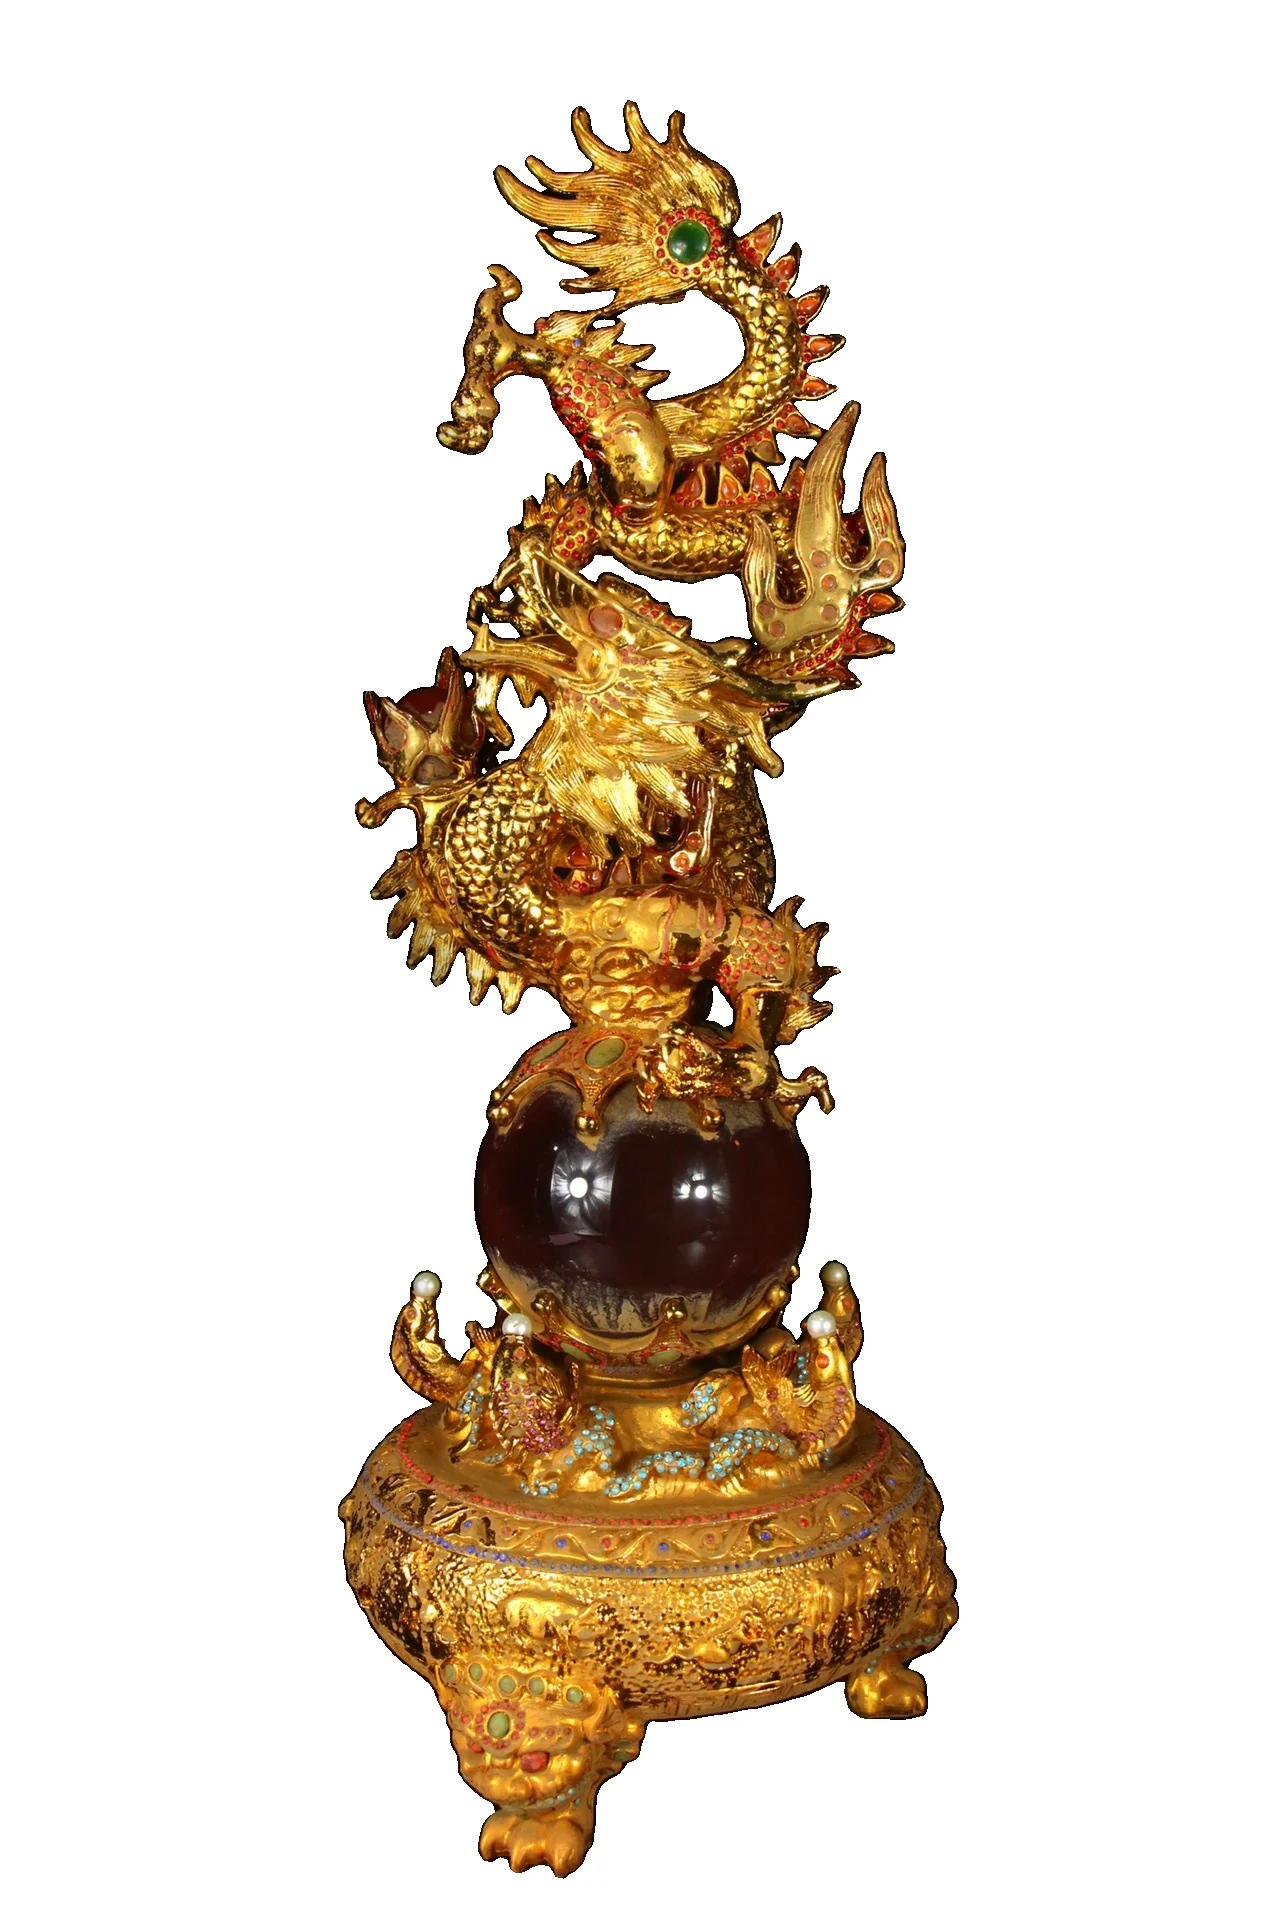 

Laojunlu старой коллекции династии Цин, медный позолоченный камень «кошачий глаз», «Дракон поворот», орнамент, античный бронзовый шедевр